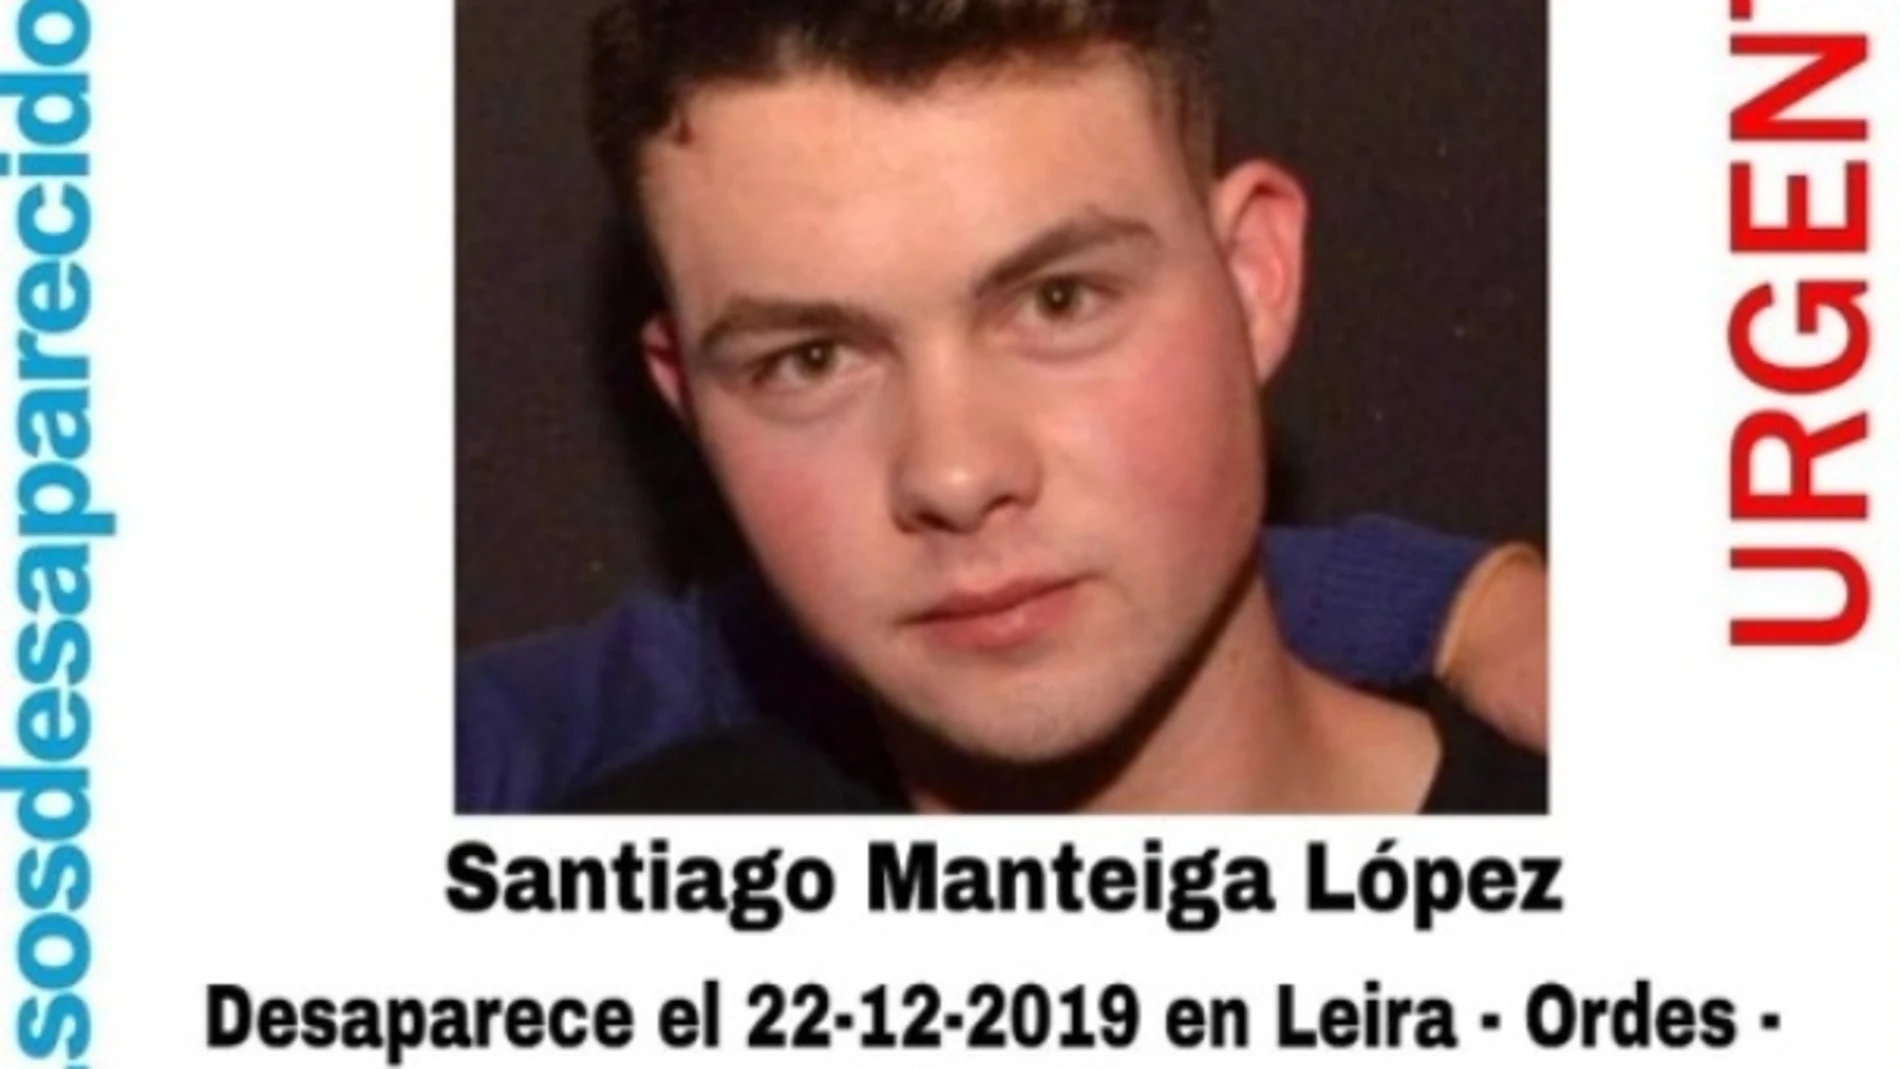 Santiago Manteiga López, de 19 años, desaparecido en Leira, A Coruña.